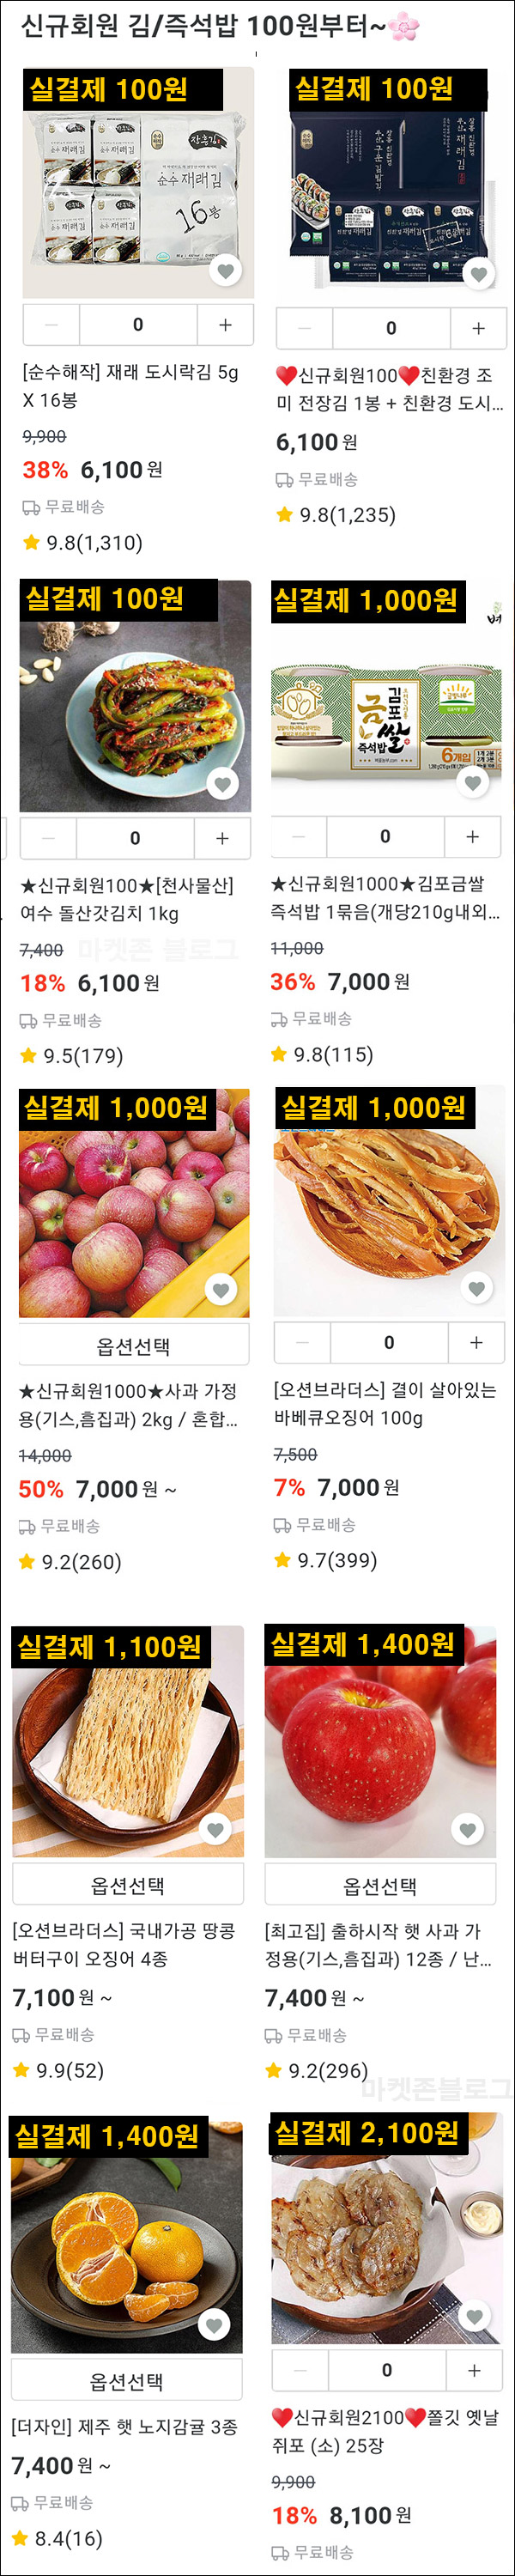 샵블리 100원딜 이벤트 & 5,000원 추가쿠폰등(무배)신규가입 ~12.31